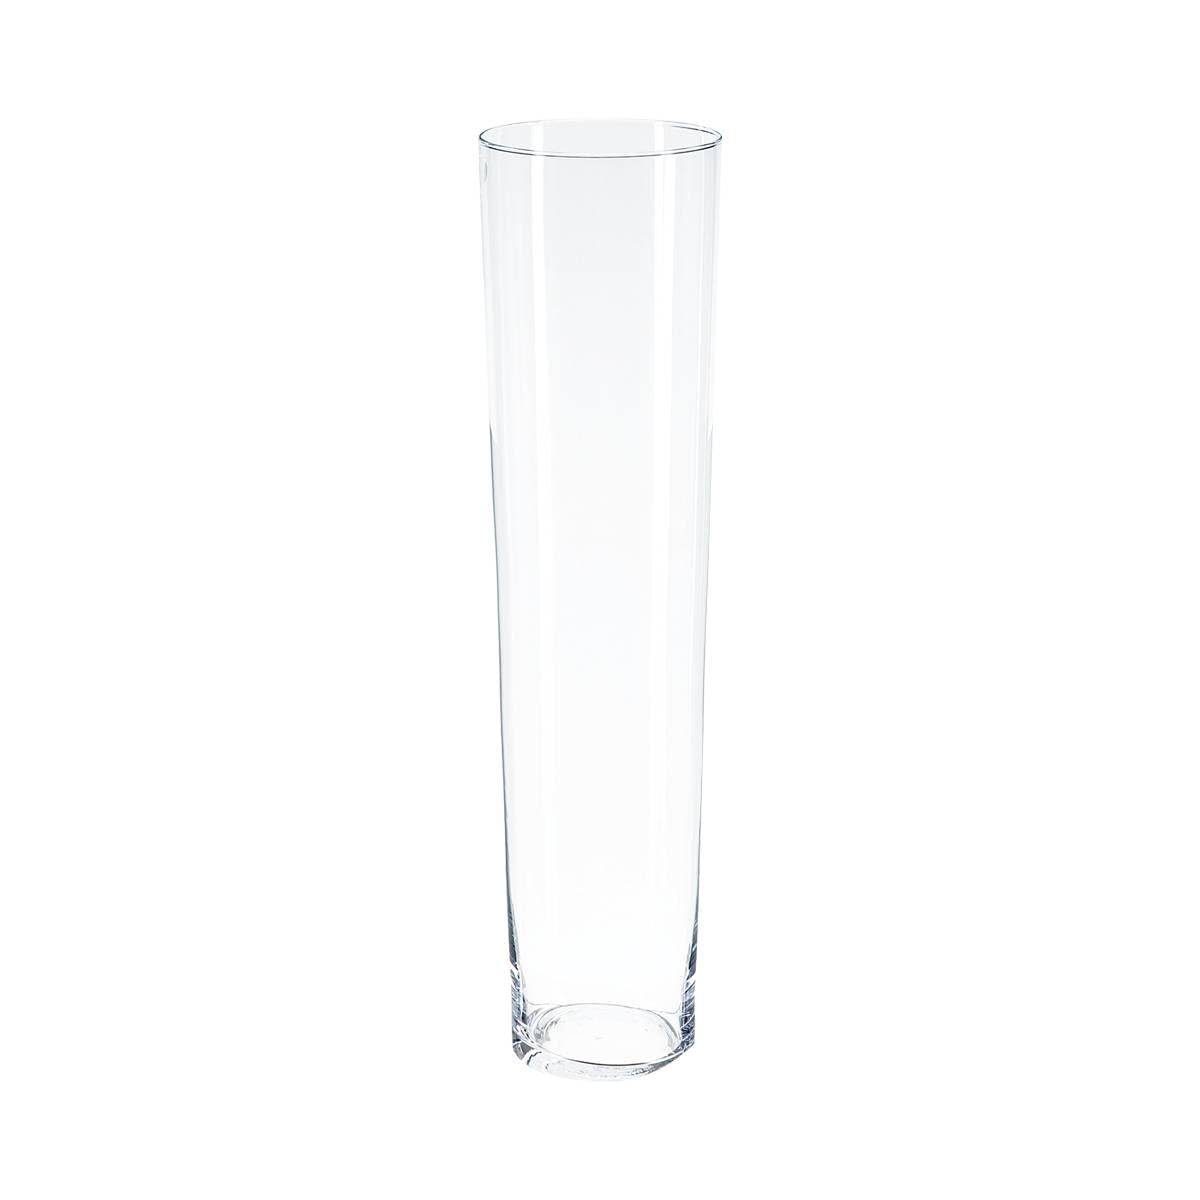 Magnifique Vase Conique - Verre - H70 cm - Atmosphera c